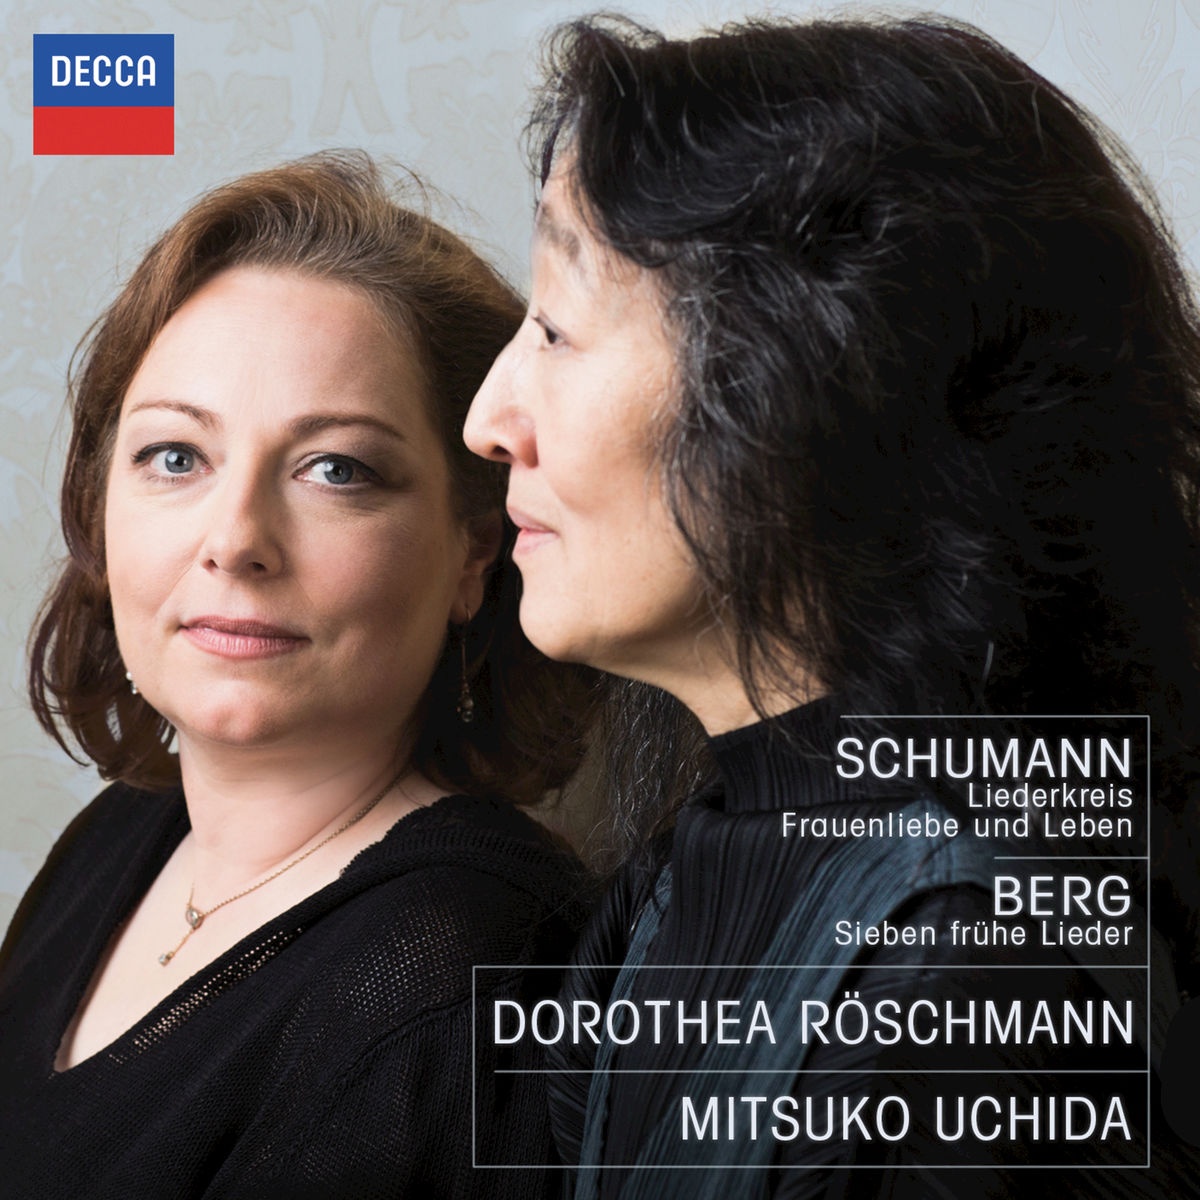 Schumann: Liederkreis Frauenliebe und Leben  Berg: Sieben frü he Lieder